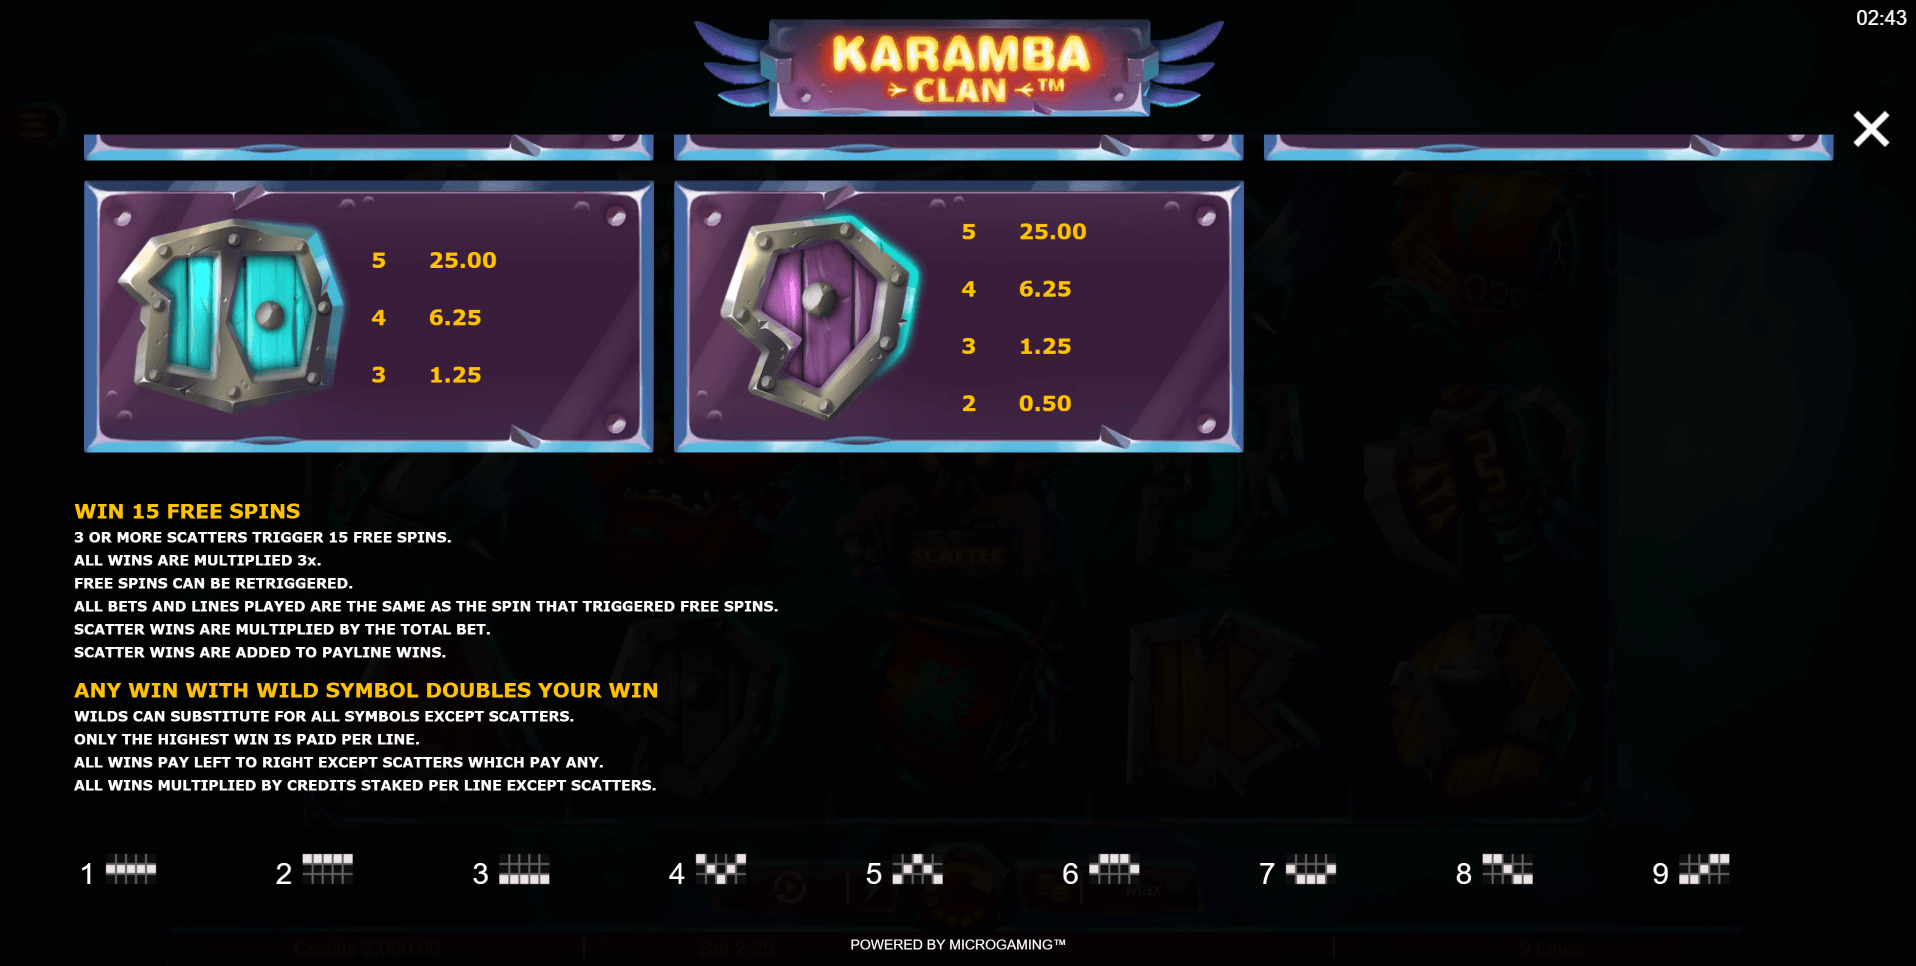 karamba clan slot machine detail image 2